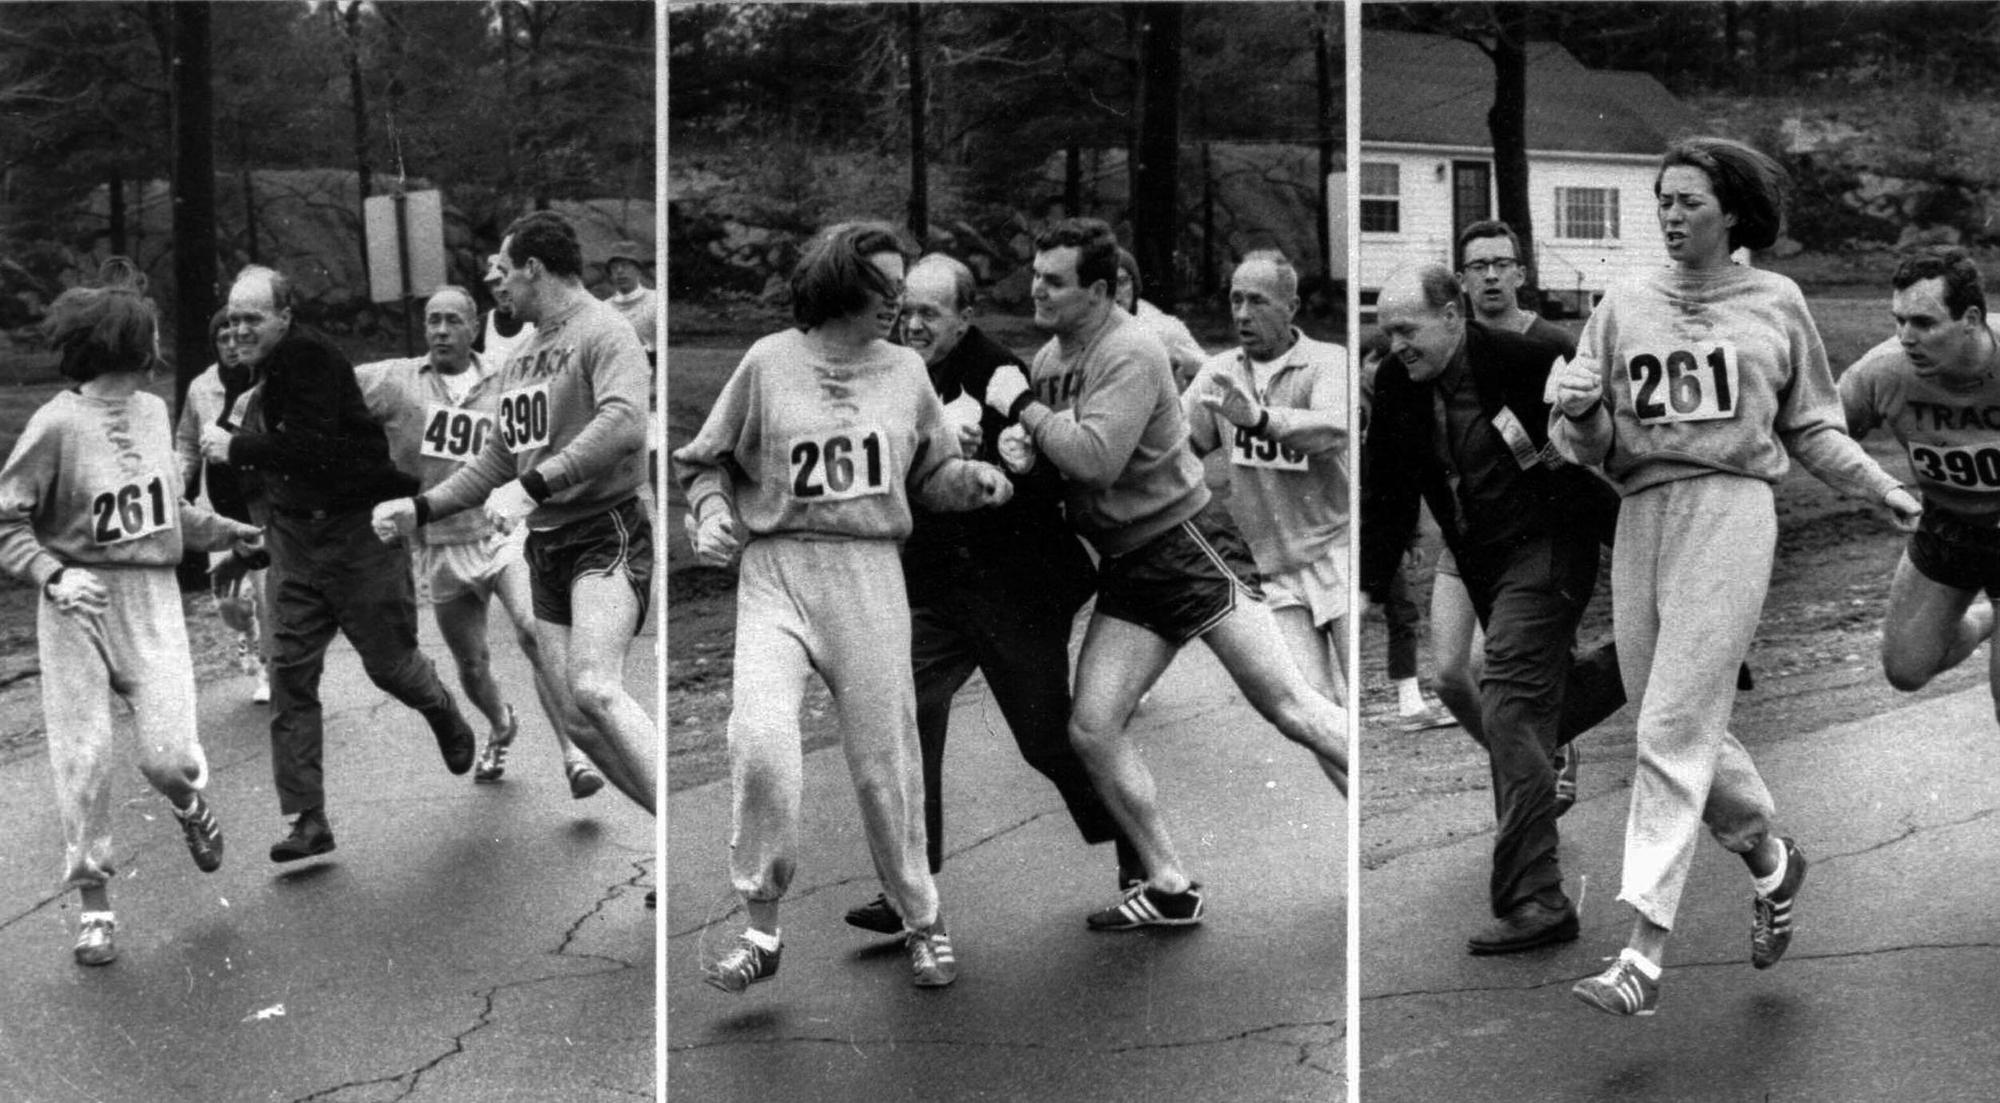 La coureuse Kathrine Switzer attaquée par un officiel de la course, Jock Semple, lors du marathon de Boston en 1967. Légende originale : "Qui a dit que la galanterie était morte ? ... Une jeune fille dont le nom n'était que "K. Switzer of Syracuse" s'est retrouvée sur le point d'être expulsée du marathon de Boston, normalement réservé aux hommes, mercredi, lorsqu'un compagnon, Thomas Miller, de Syracuse, a remis l'officiel de la course à sa place. La séquence montre Jock Semple s'approchant pour intercepter Mlle Switzer, puis se faire renvoyer par Miller. Image publiée à l'origine dans le Boston Herald, distribué par l'Associated Press et publié dans de nombreux journaux le 20 avril 1967.